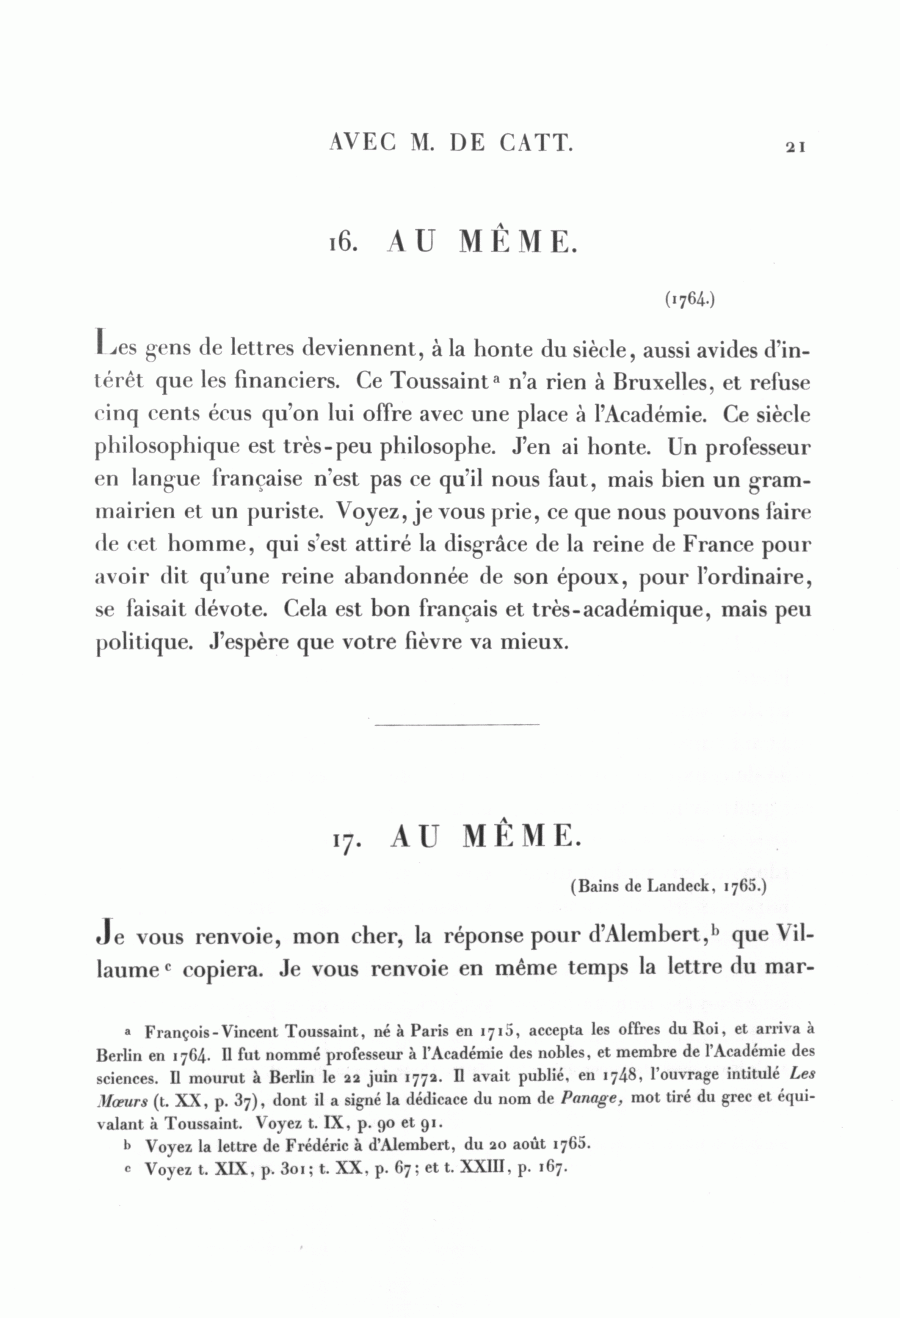 S. 21, Obj. 2